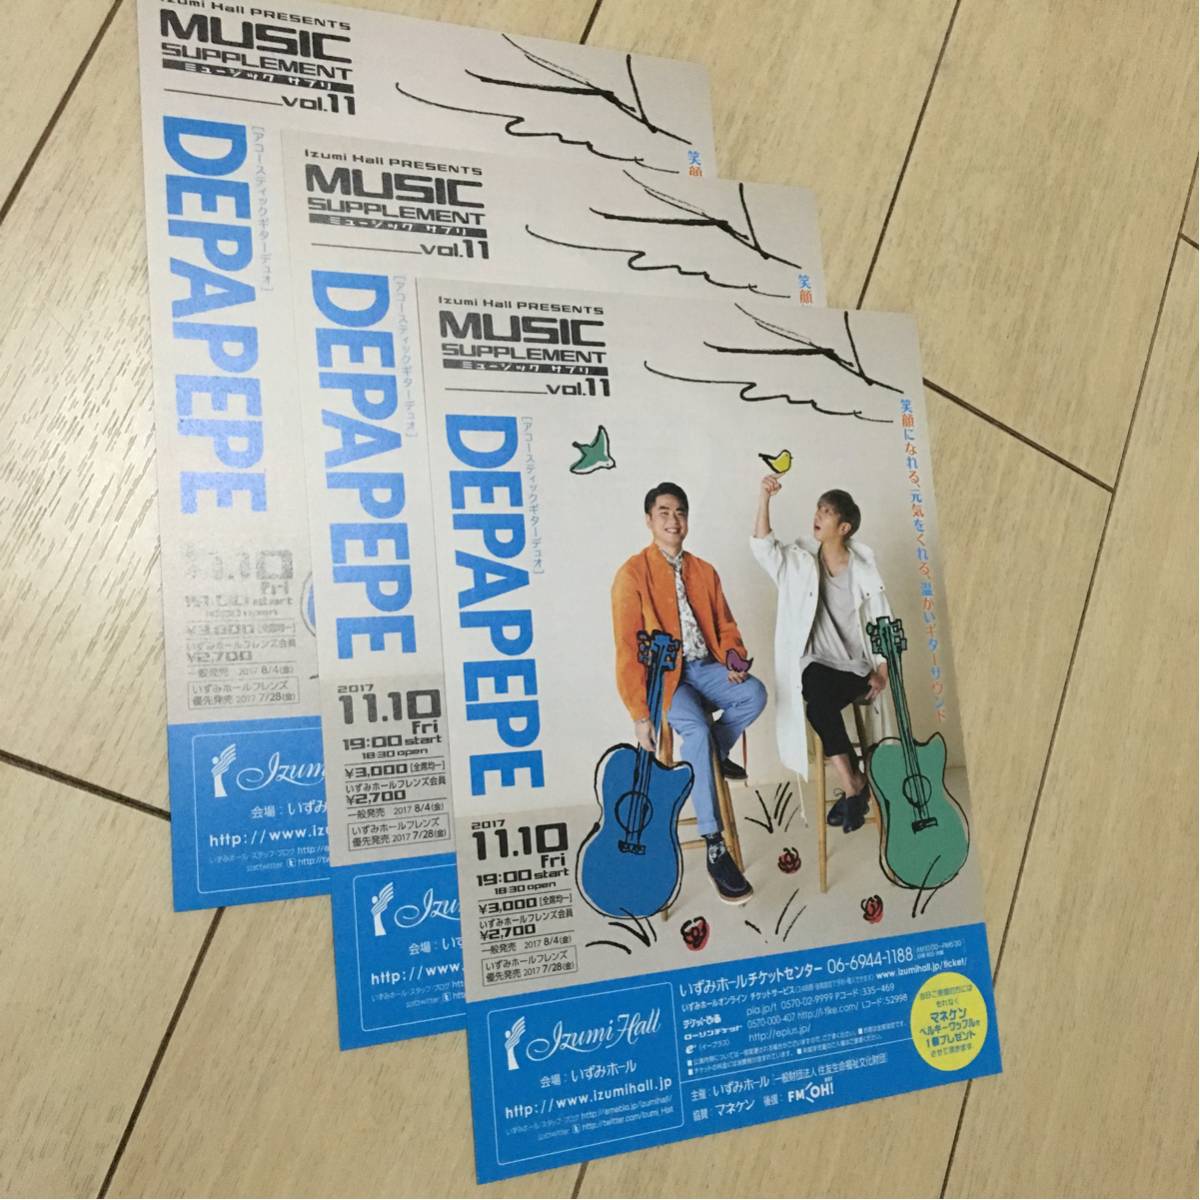 デパペペ depapepe アコースティック ギター デュオ 207 ライブ 告知 チラシ 大阪 いずみホール コンサート_画像3